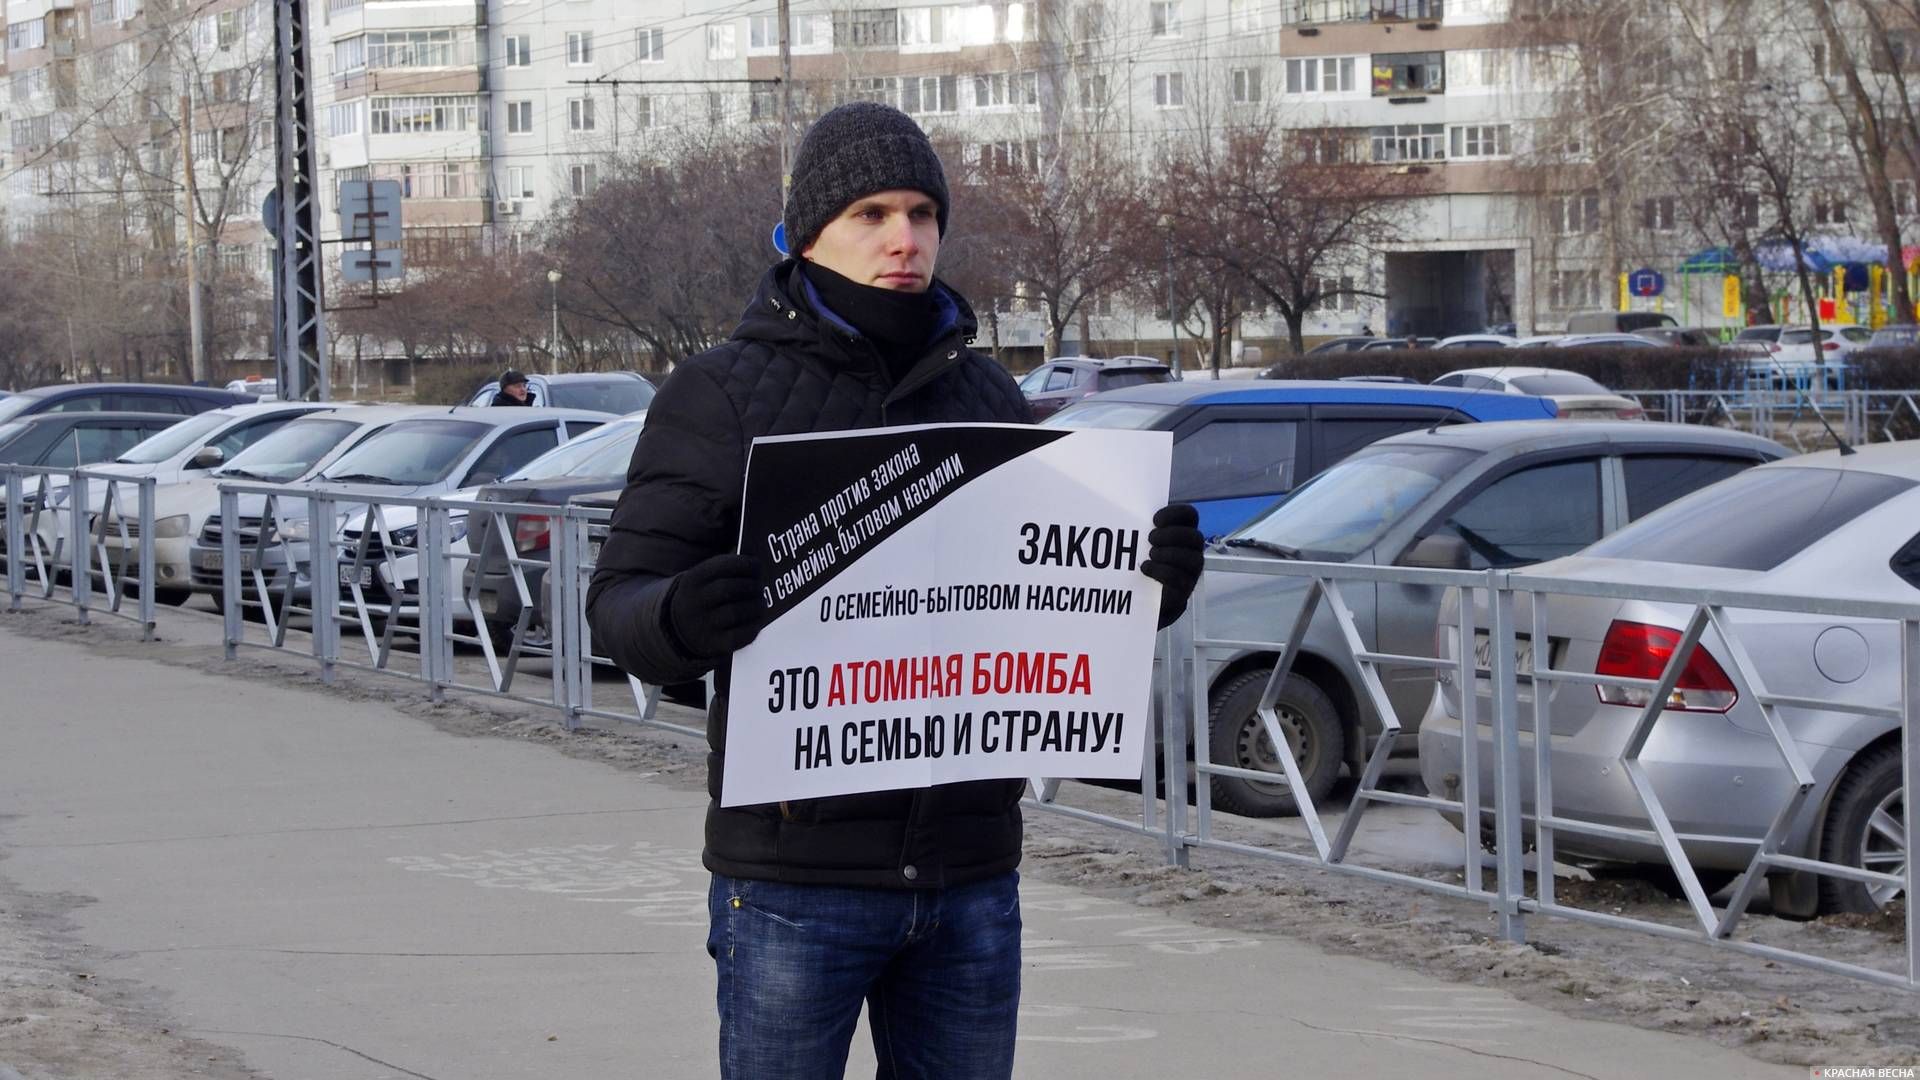 Пикет в Тольятти против закона о семейно-бытовом насилии